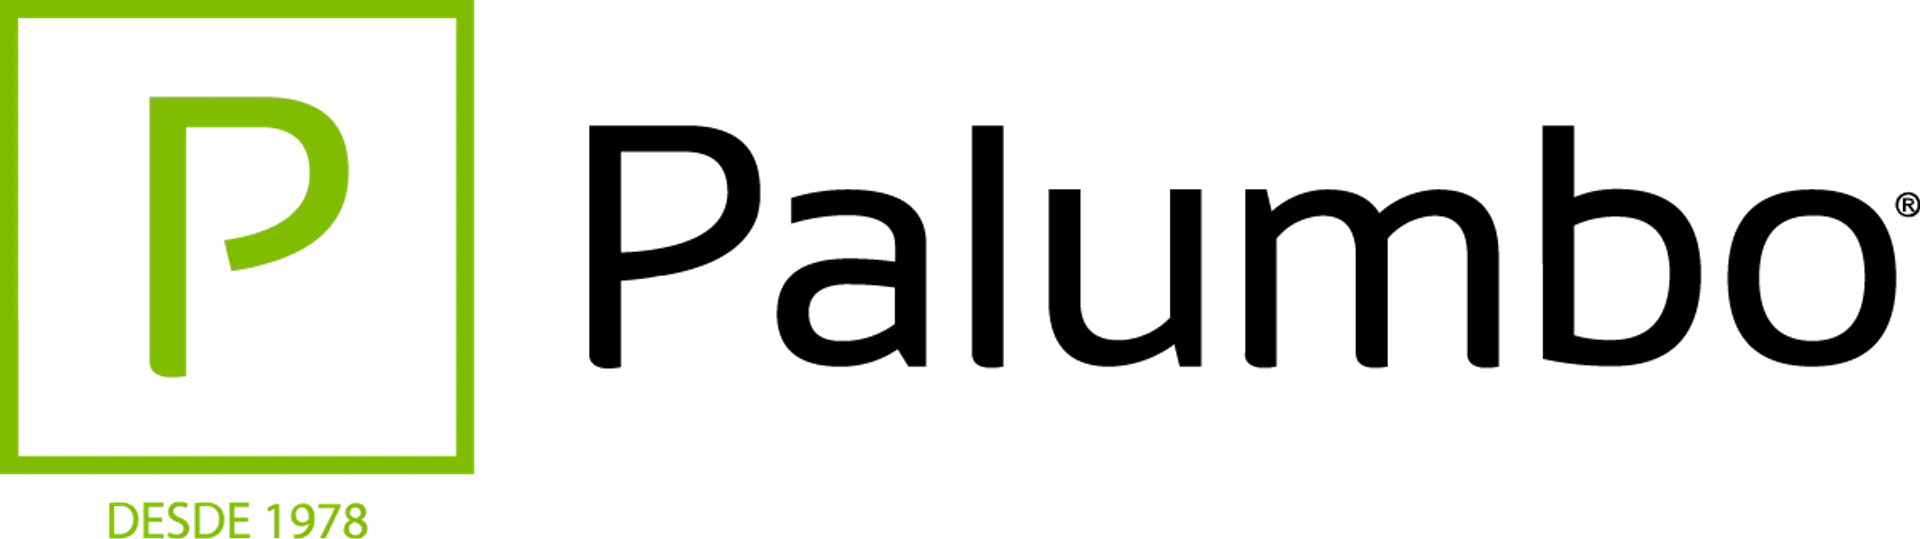 PALUMBO logo